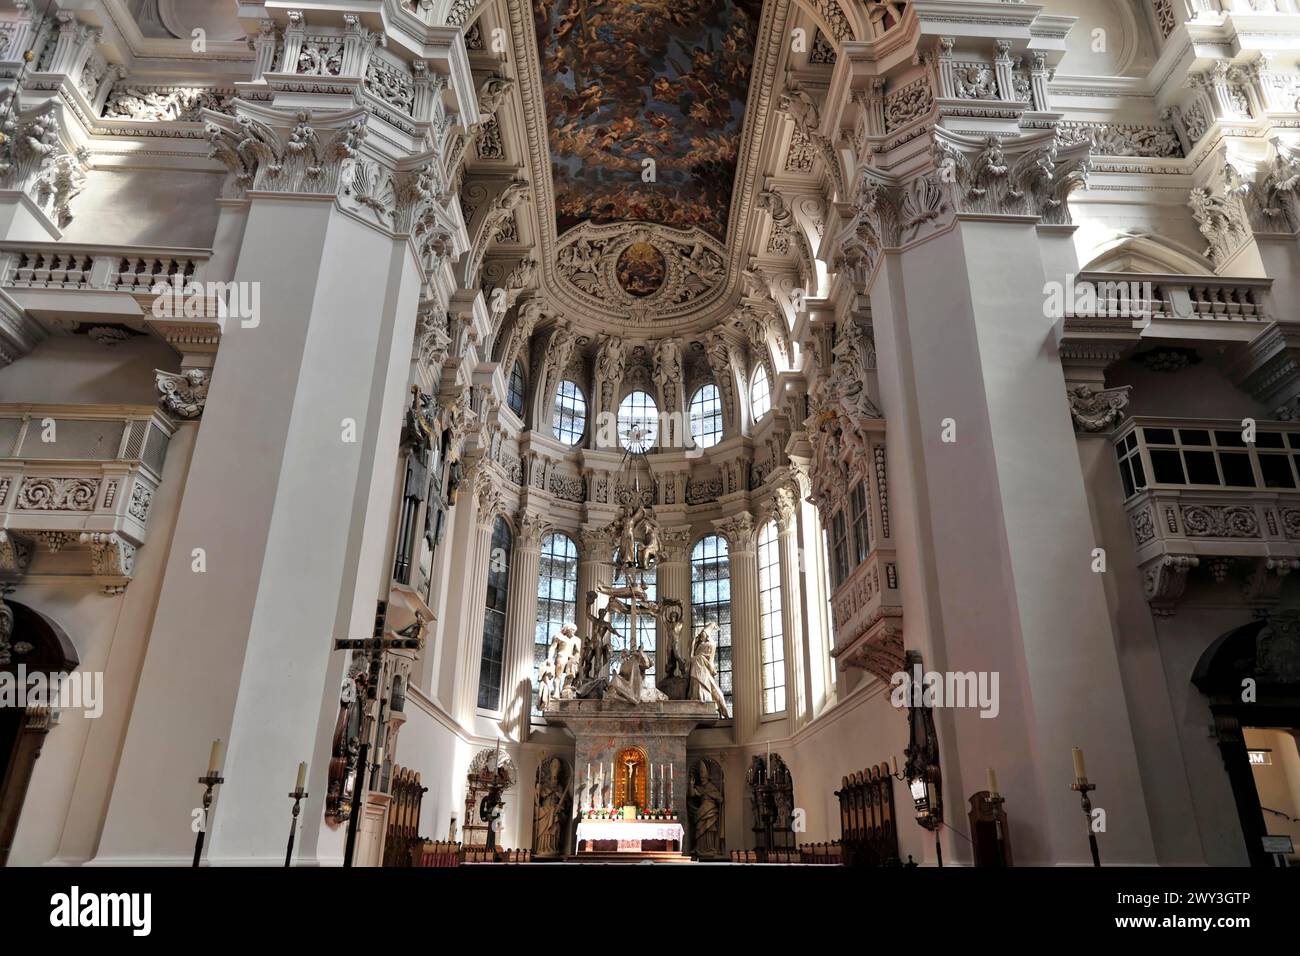 Stephansdom, Passau, Innenansicht einer Kirche mit beeindruckender Kuppel und Fresko-Dekoration, Passau, Bayern, Deutschland Stockfoto